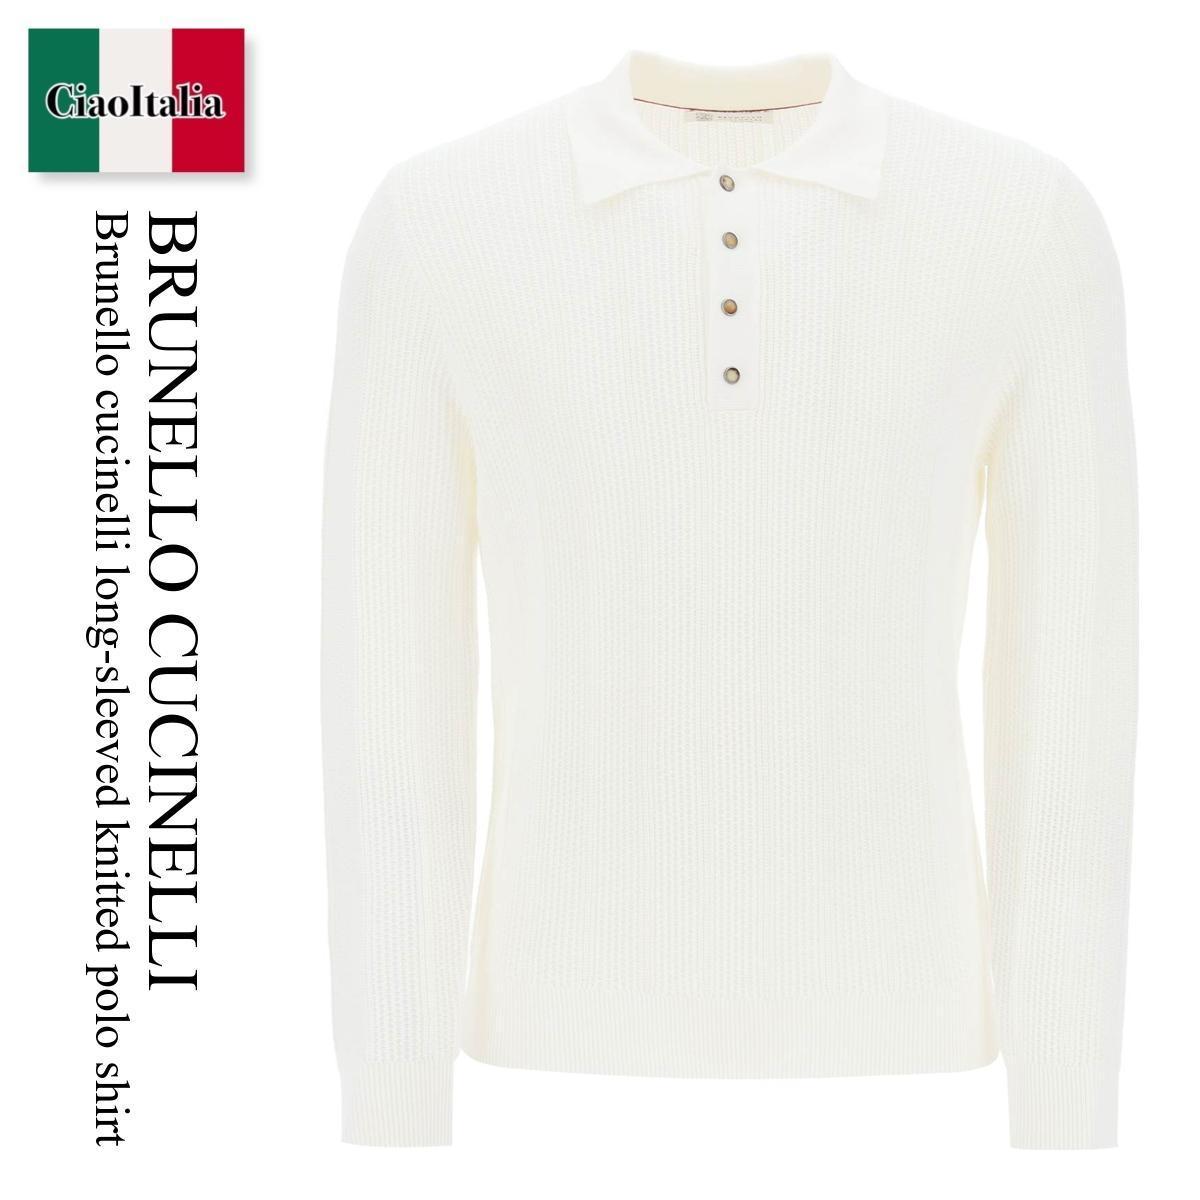 ブルネロクチネリ / Brunello Cucinelli Long-Sleeved Knitted Polo Shirt / M29202505 / M29202505 C2723 / M29202505C2723 / ポロシャツ / 「正規品補償」「VIP価格販売」「お買い物サポート」